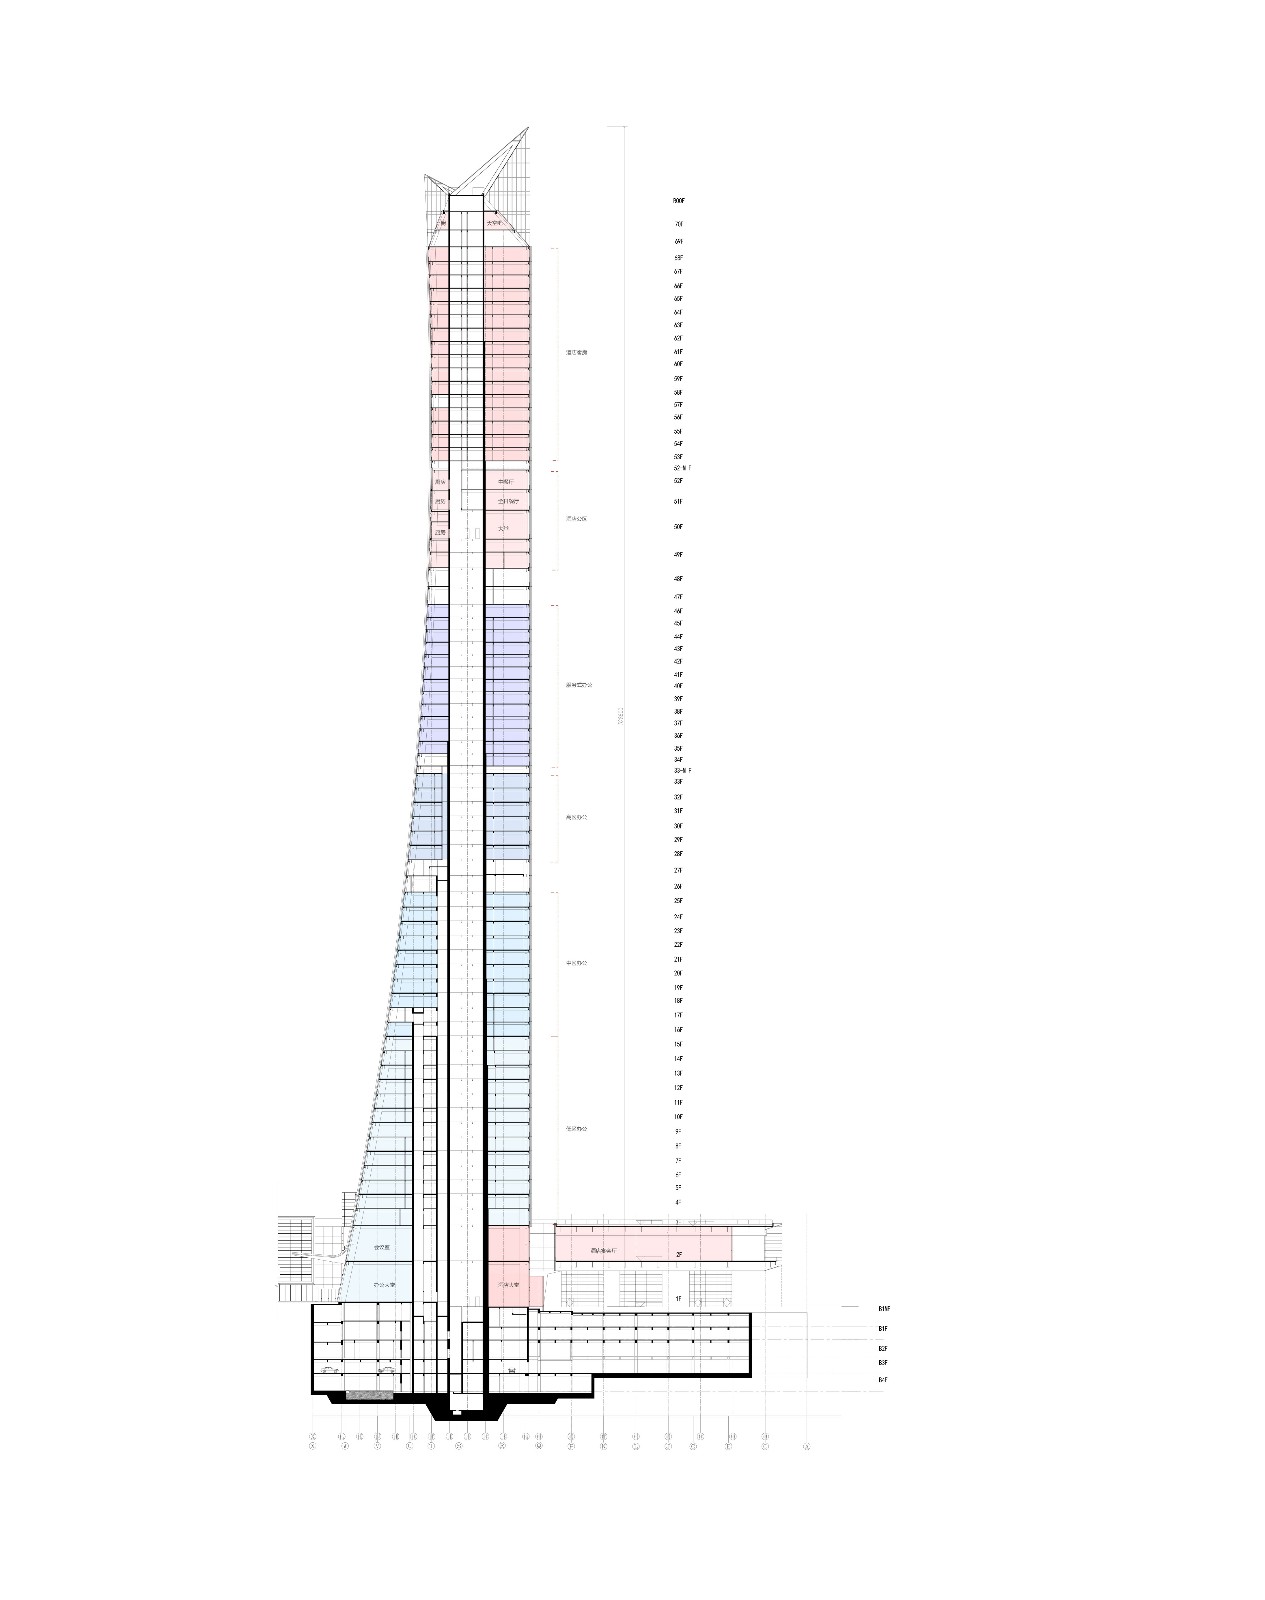 建筑剖面 | 分析图 - Fenxitu.cn